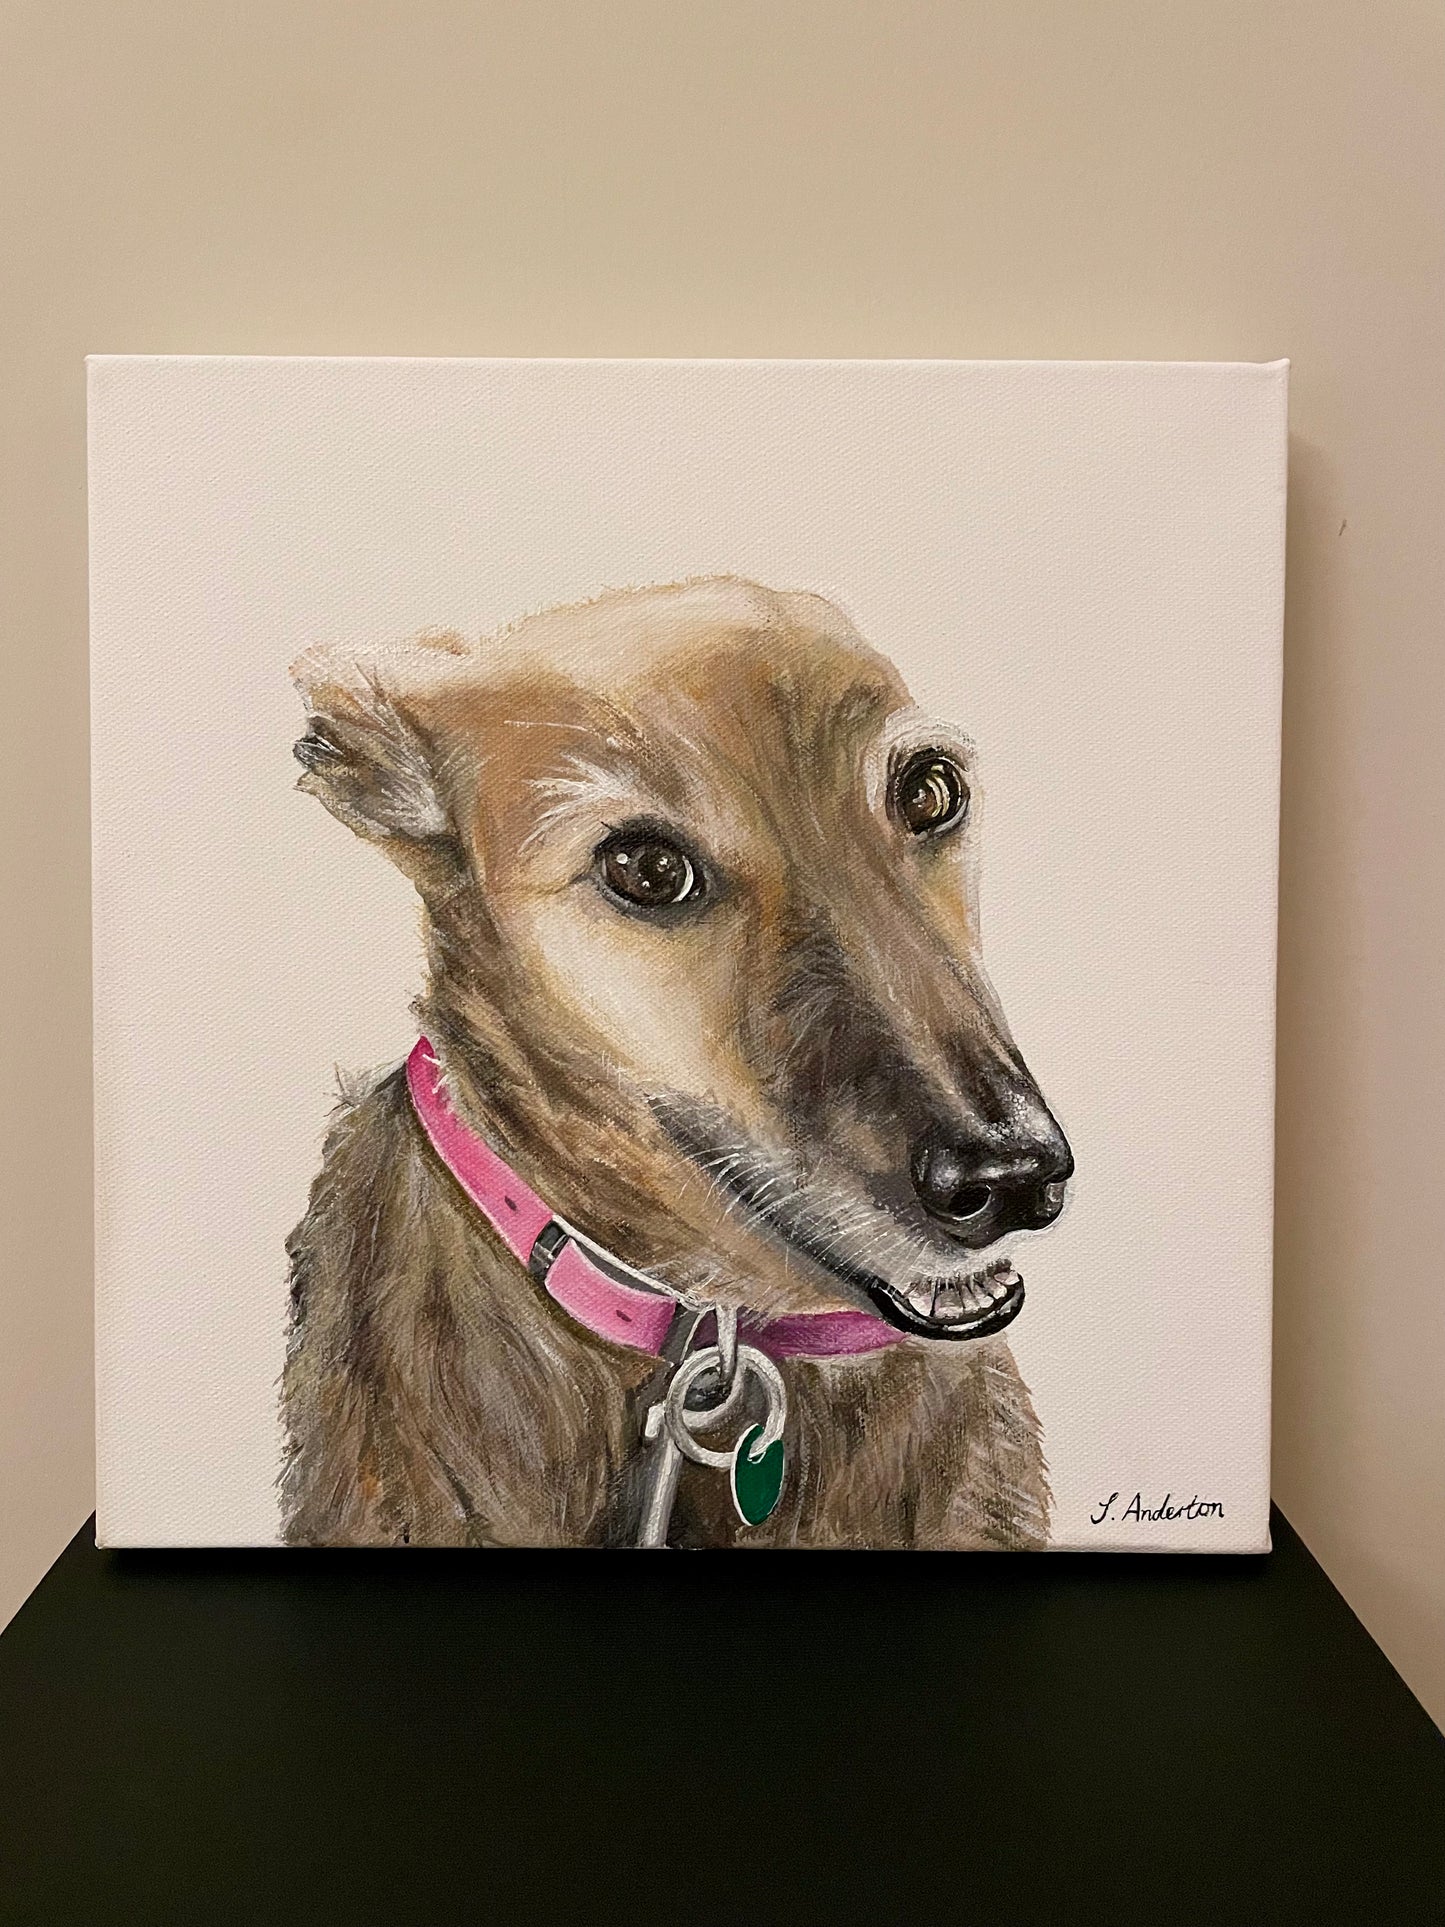 Commission Pet Portrait